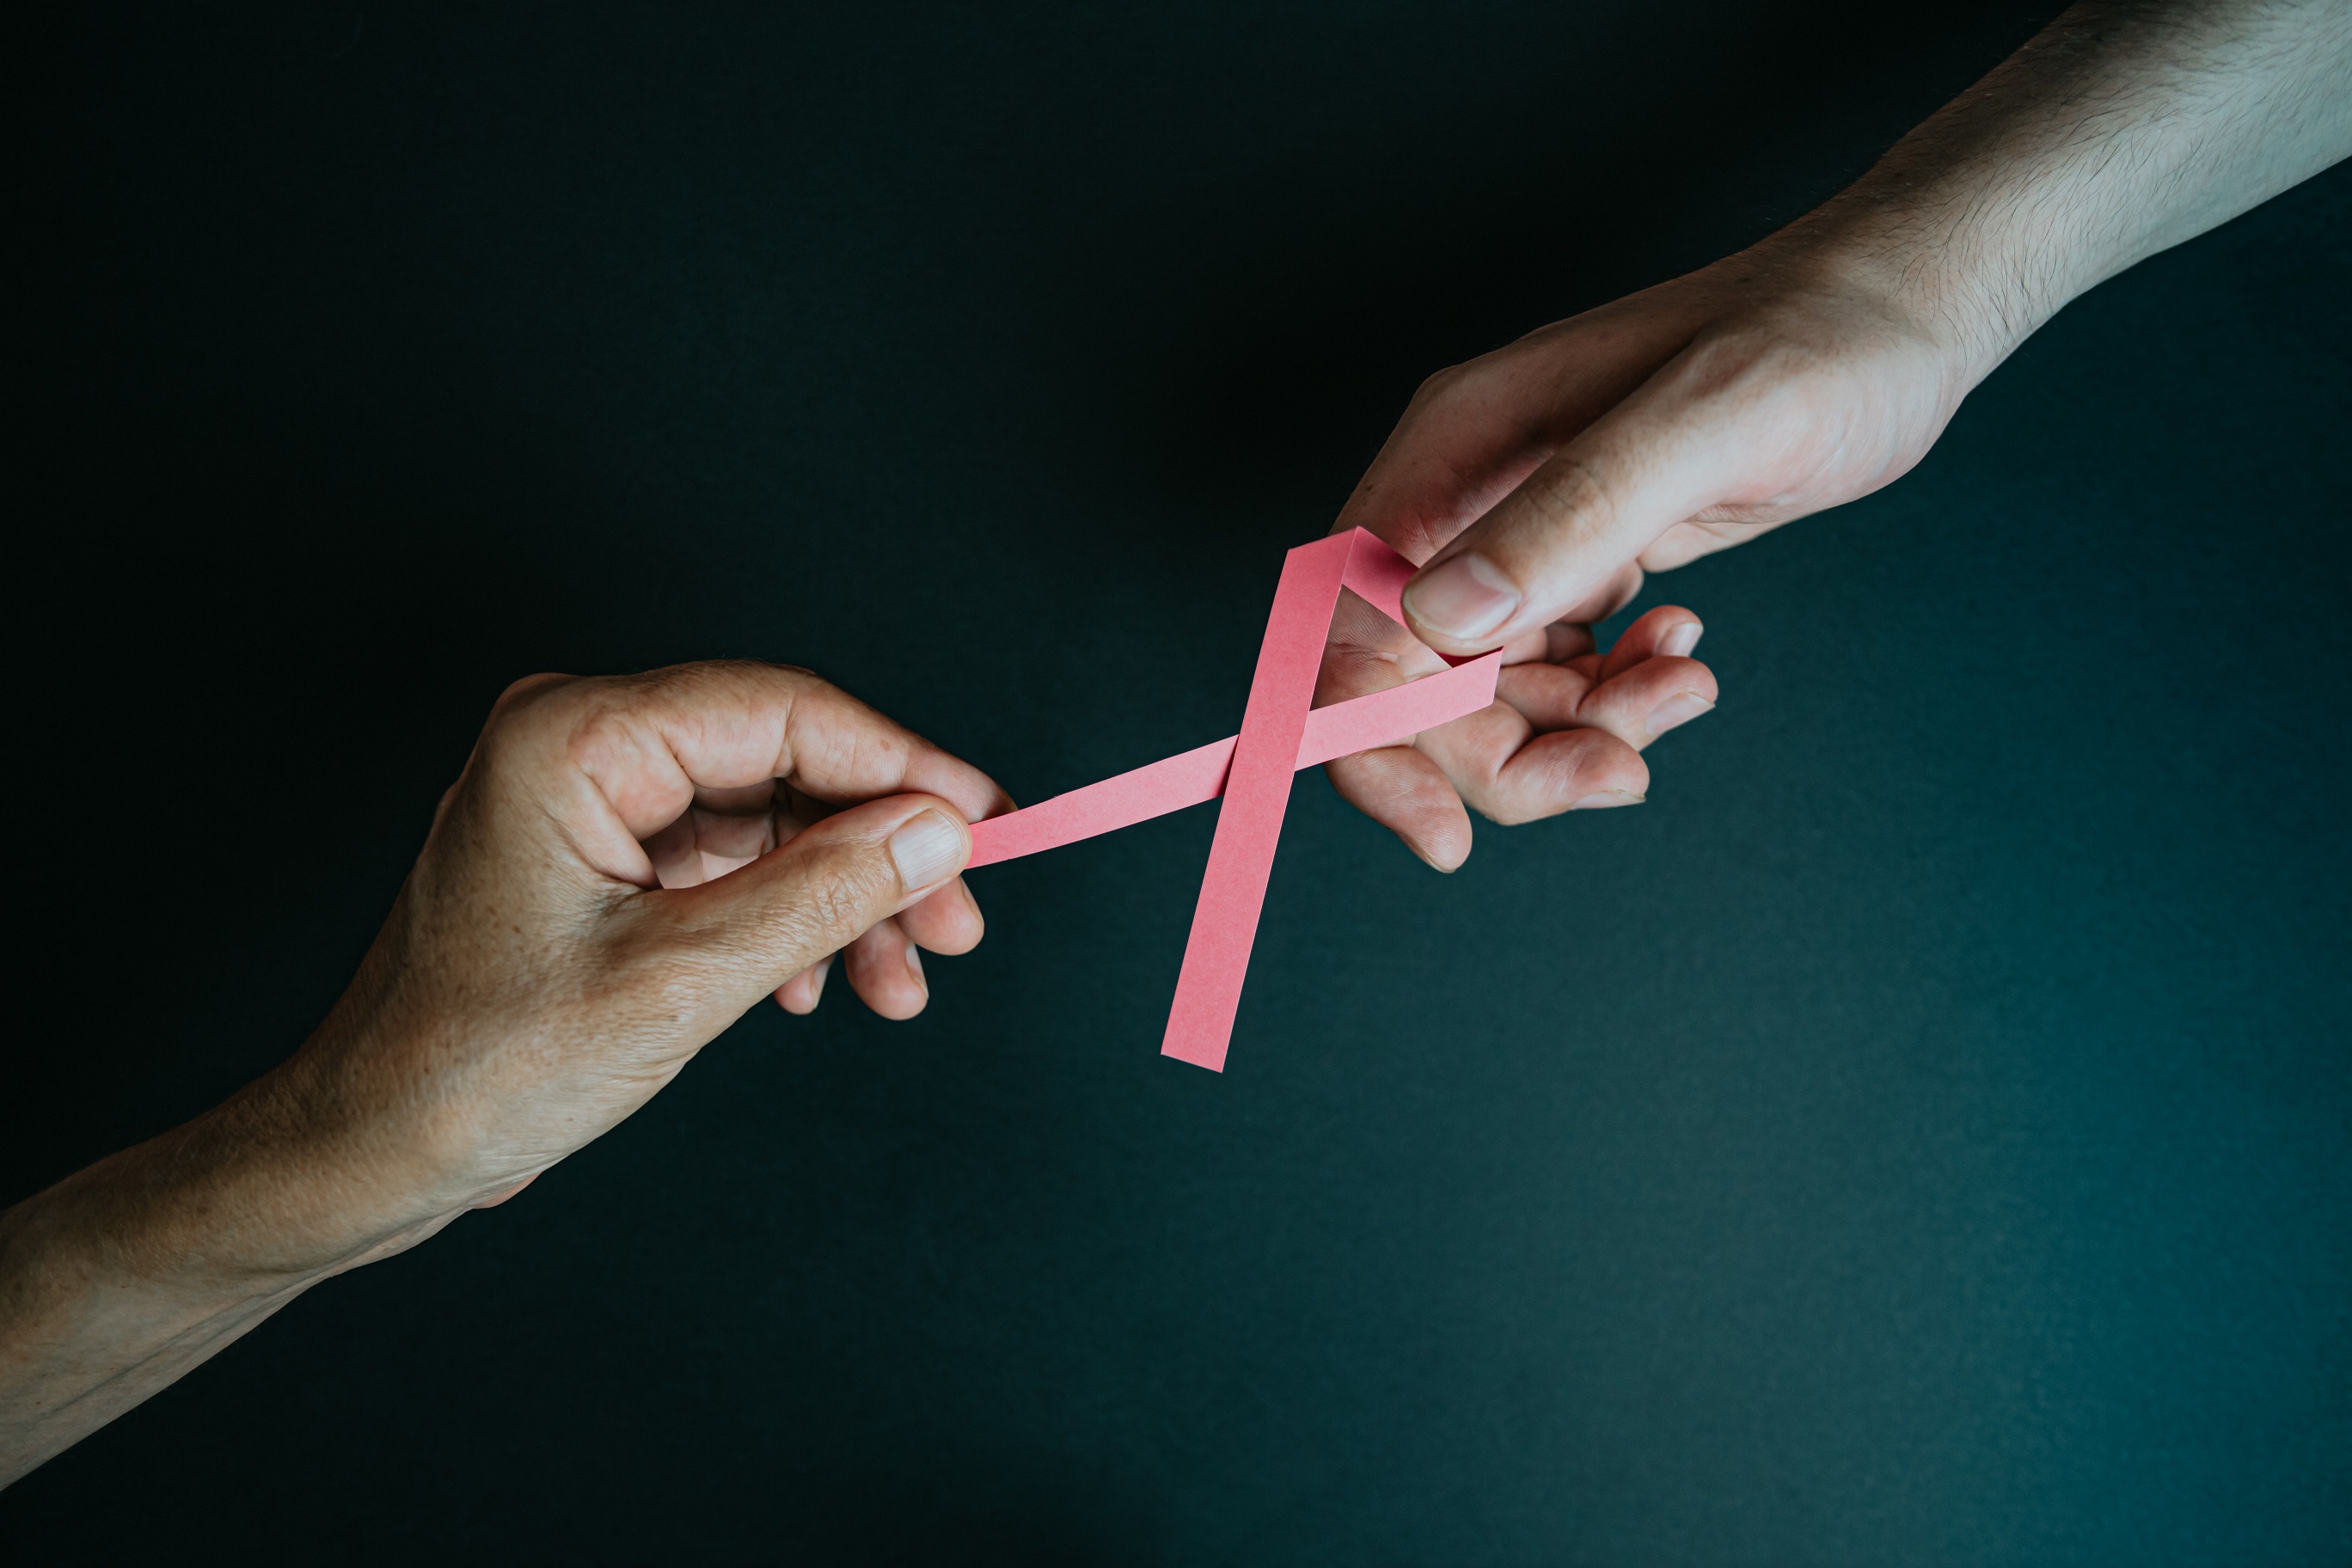 Pacífico lanza campaña gratuita de despistaje de cáncer de mama en sus planes de salud